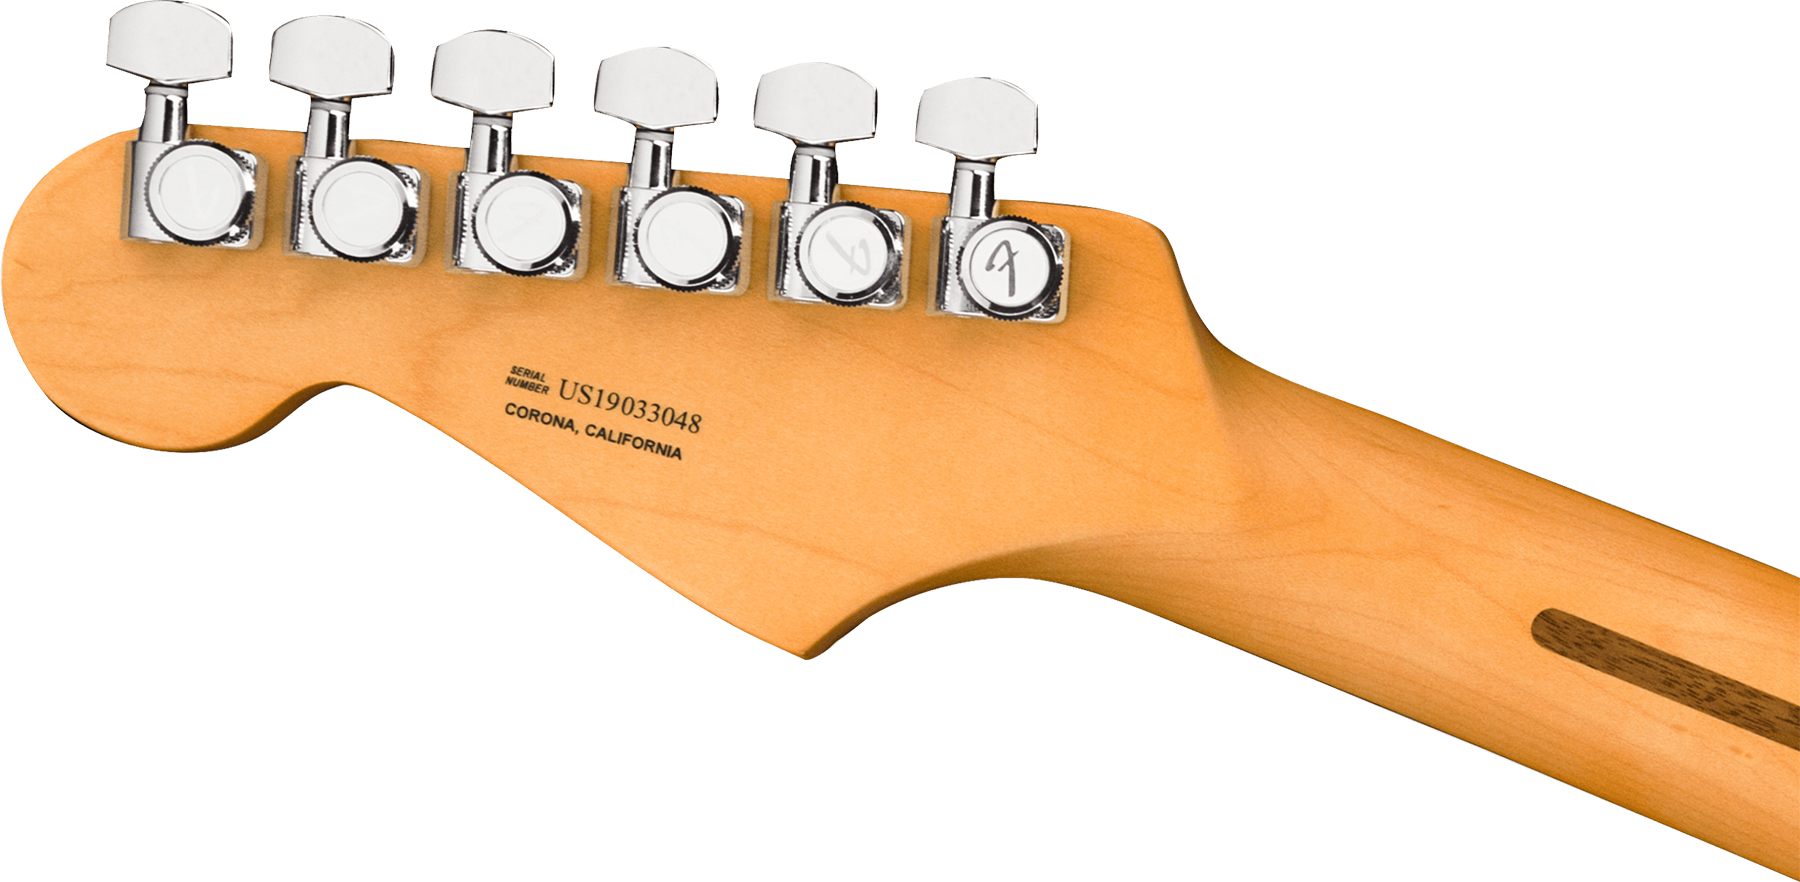 Fender Strat American Ultra Hss 2019 Usa Rw - Ultraburst - Elektrische gitaar in Str-vorm - Variation 3